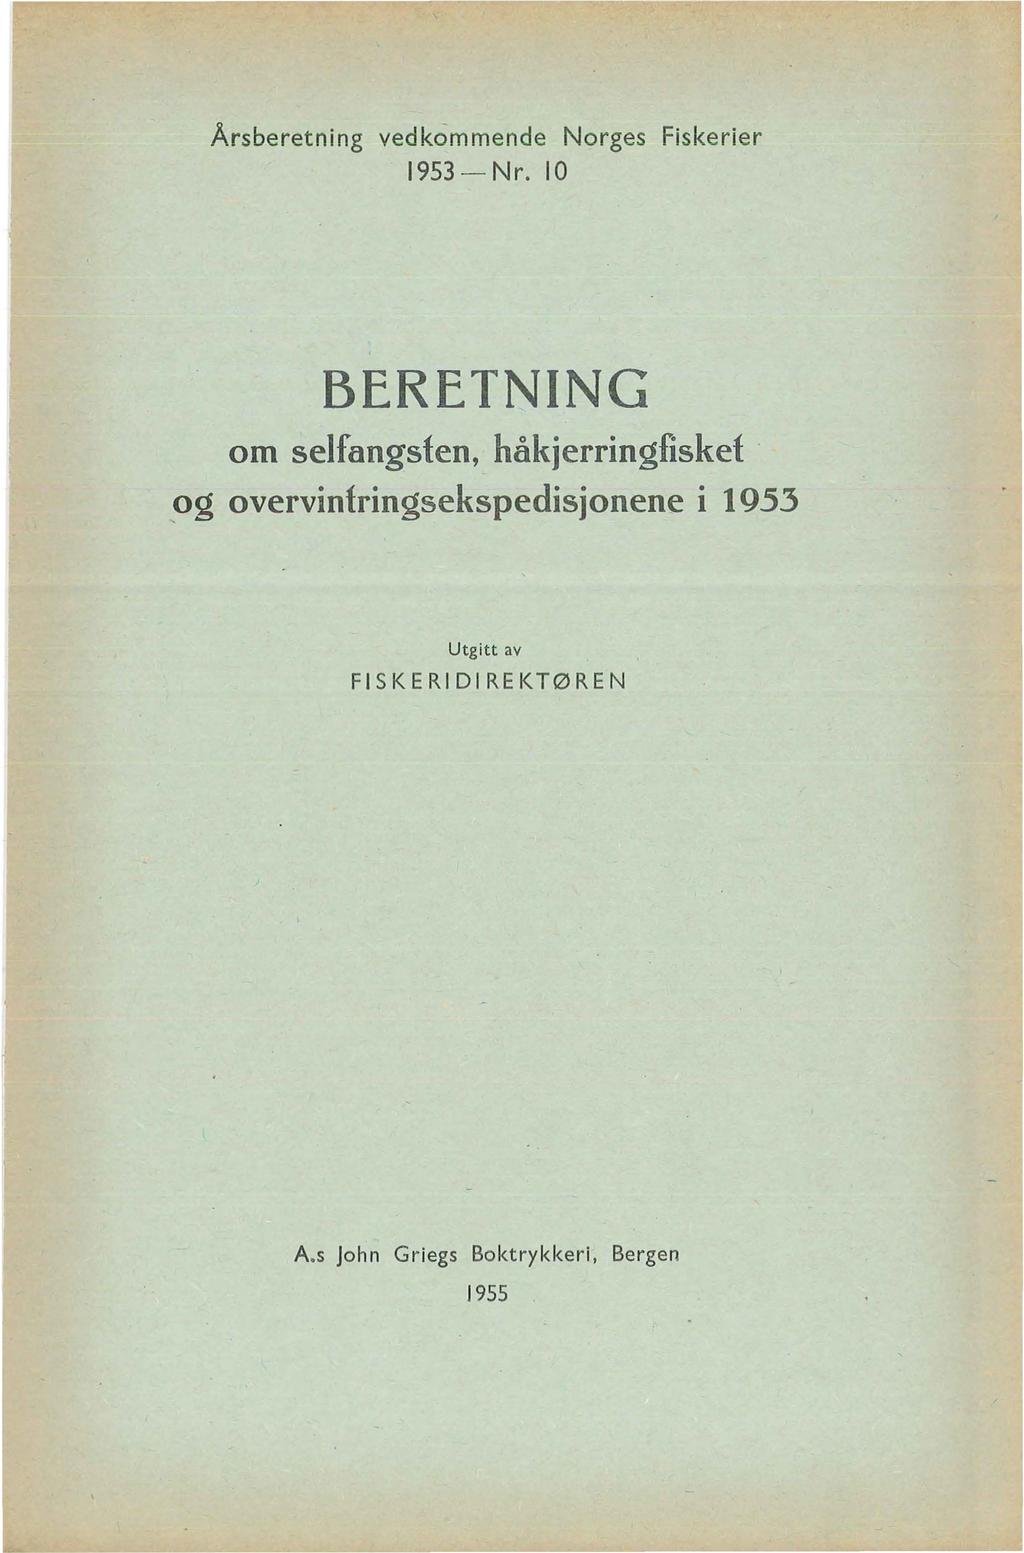 Årsberetning vedkommende Norges Fiskerier 1953-Nr.